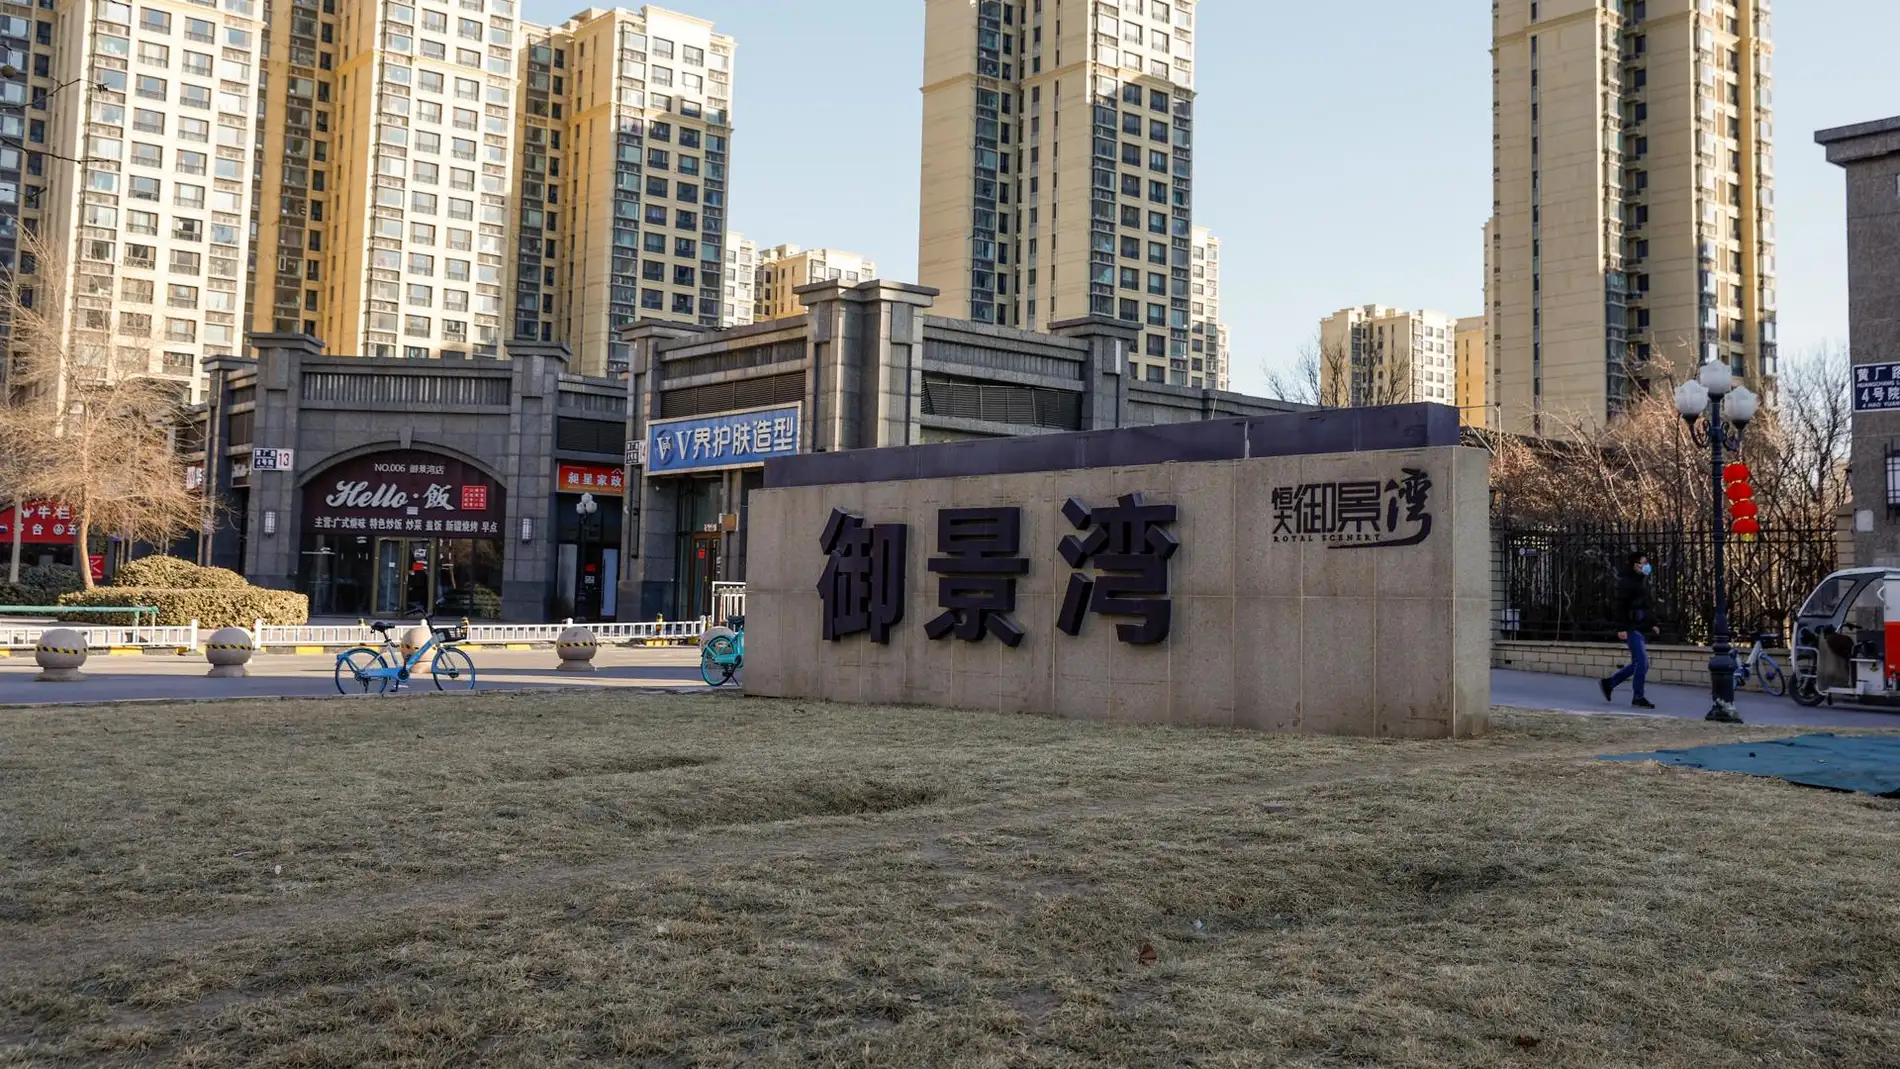 La entrada de un complejo de viviendas Evergrande en Beijing, China